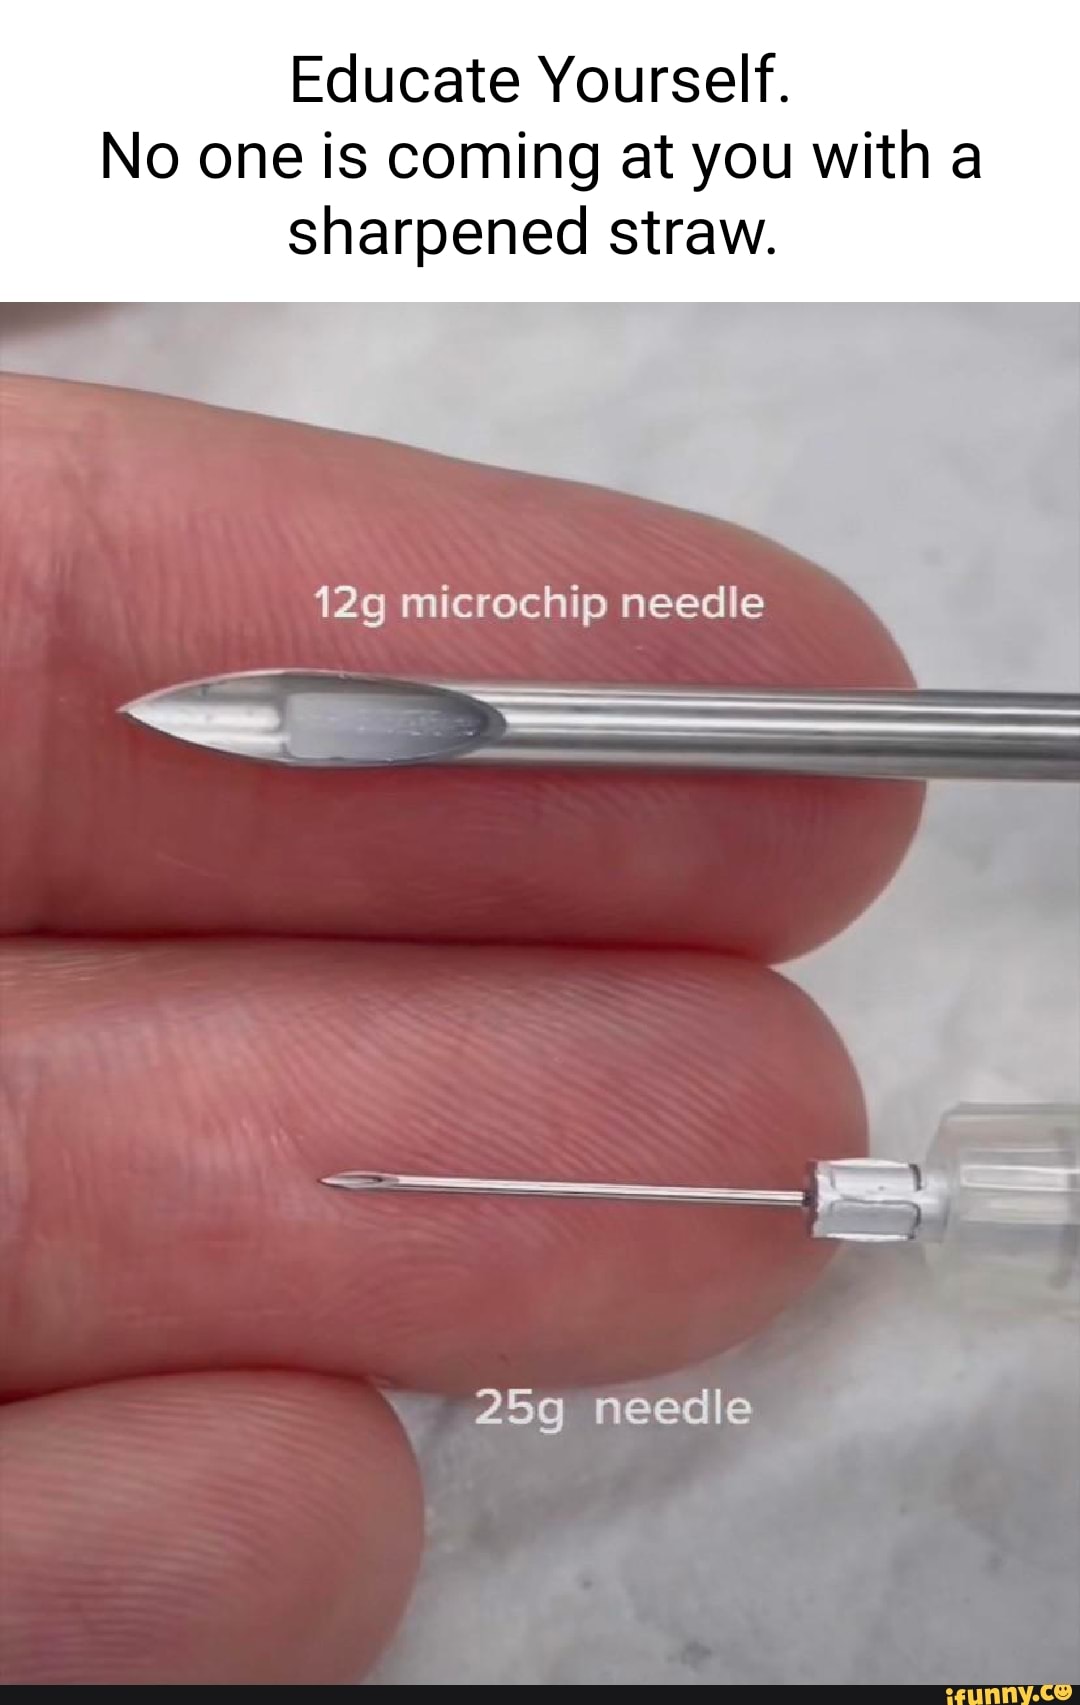 Микрочип в игле для вакцинации